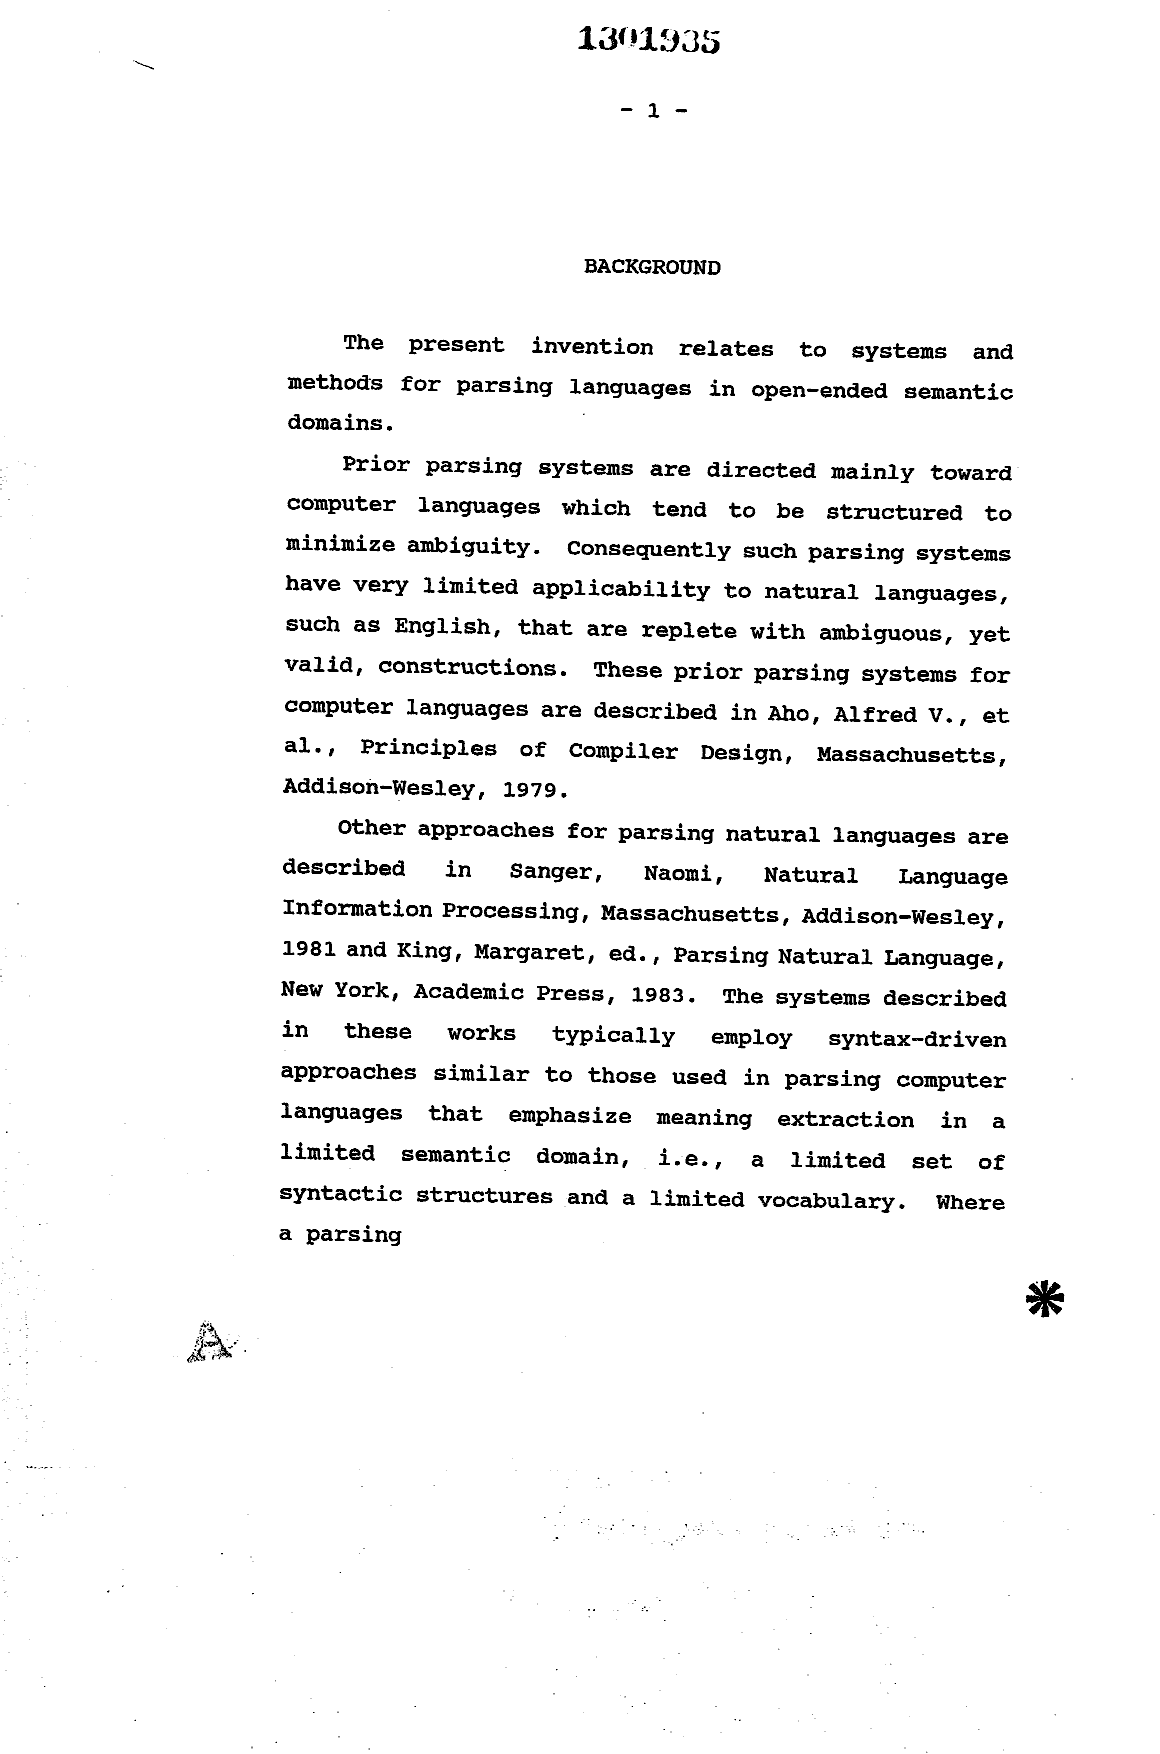 Canadian Patent Document 1301935. Description 19931030. Image 1 of 75